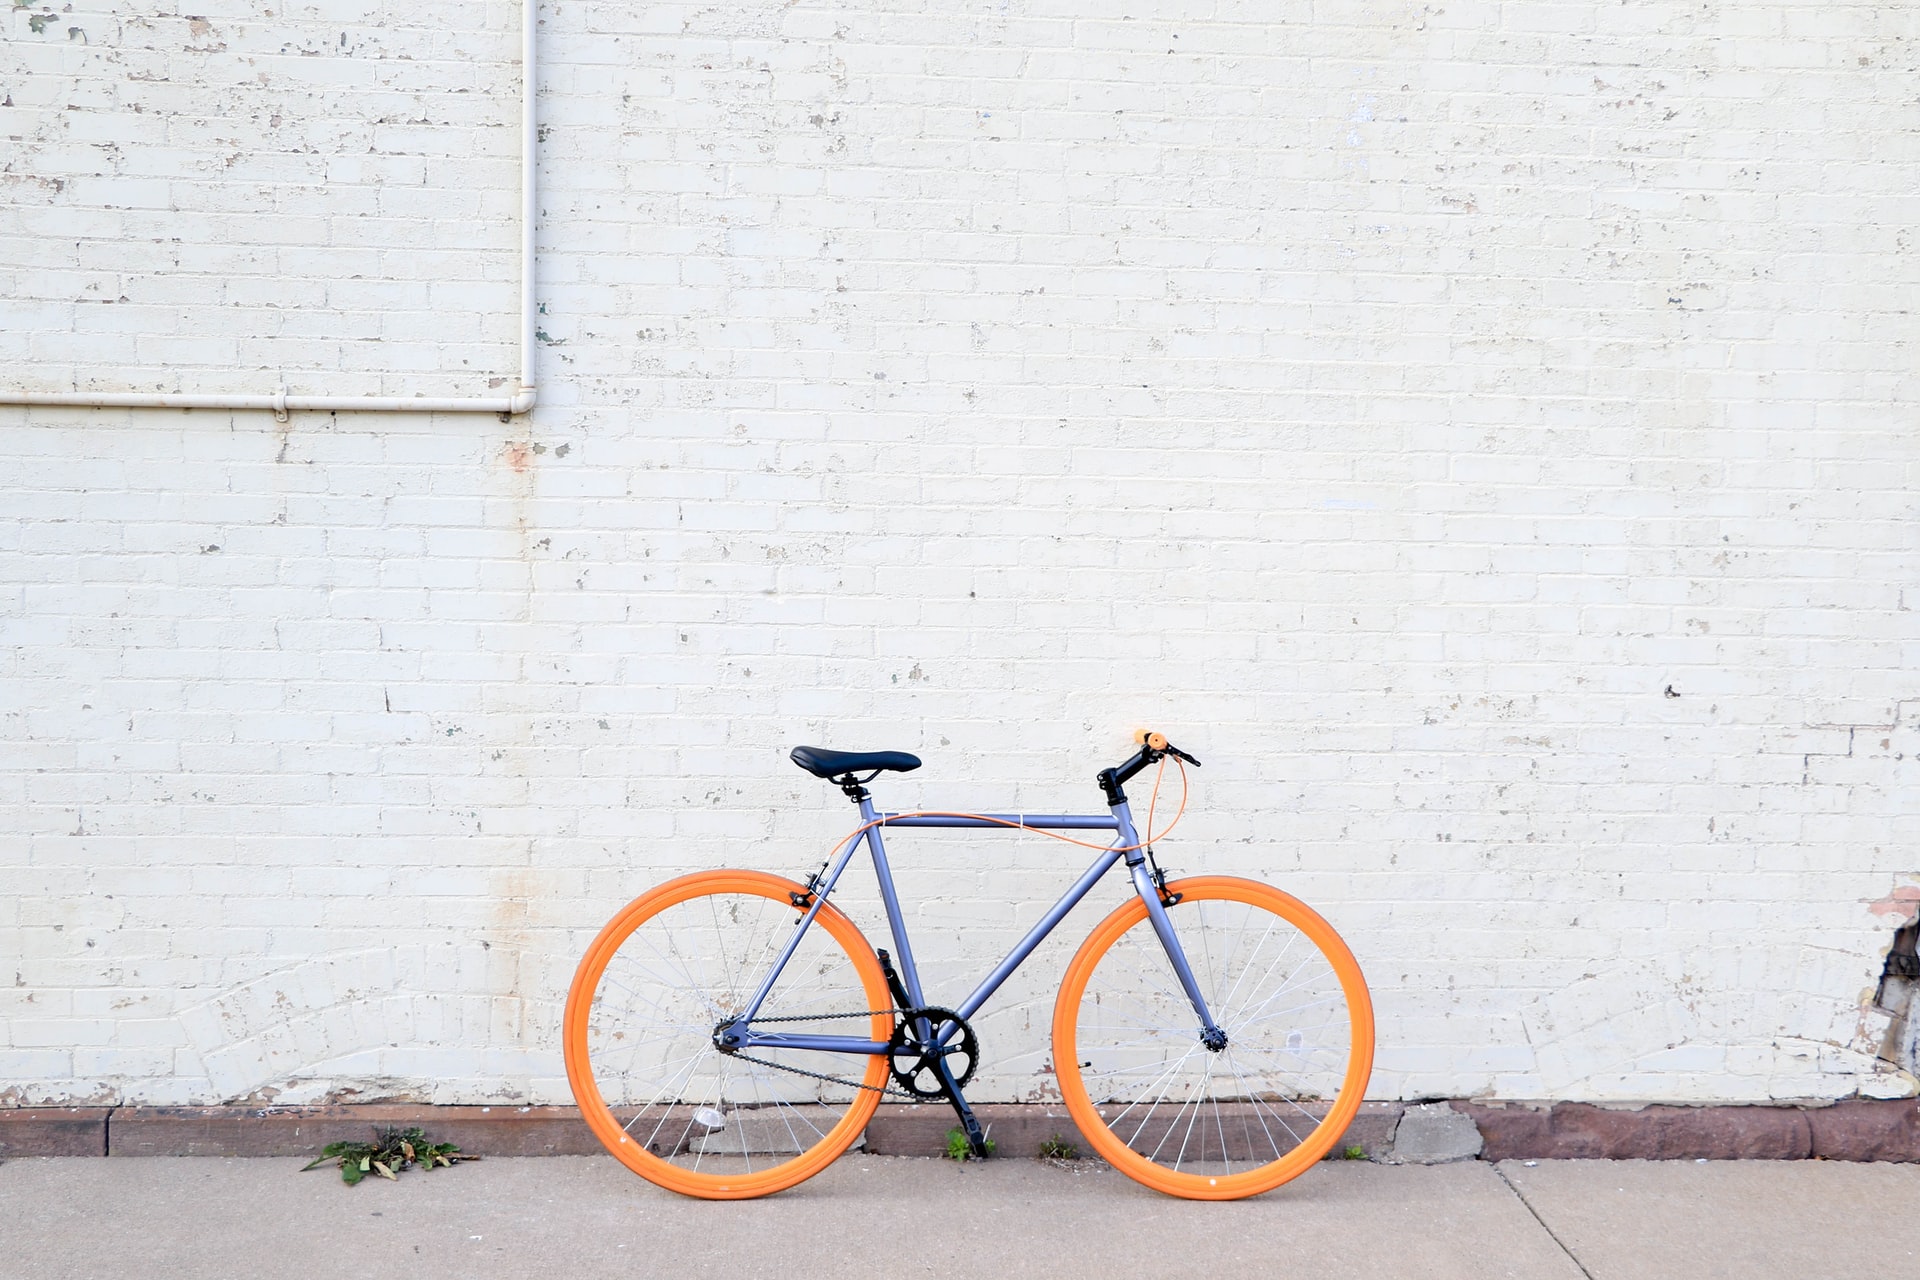 Assistência bicicleta garante tranquilidade para usuários que optam por mobilidade sustentável / Foto: Tiffany Nutt / Unsplash Images